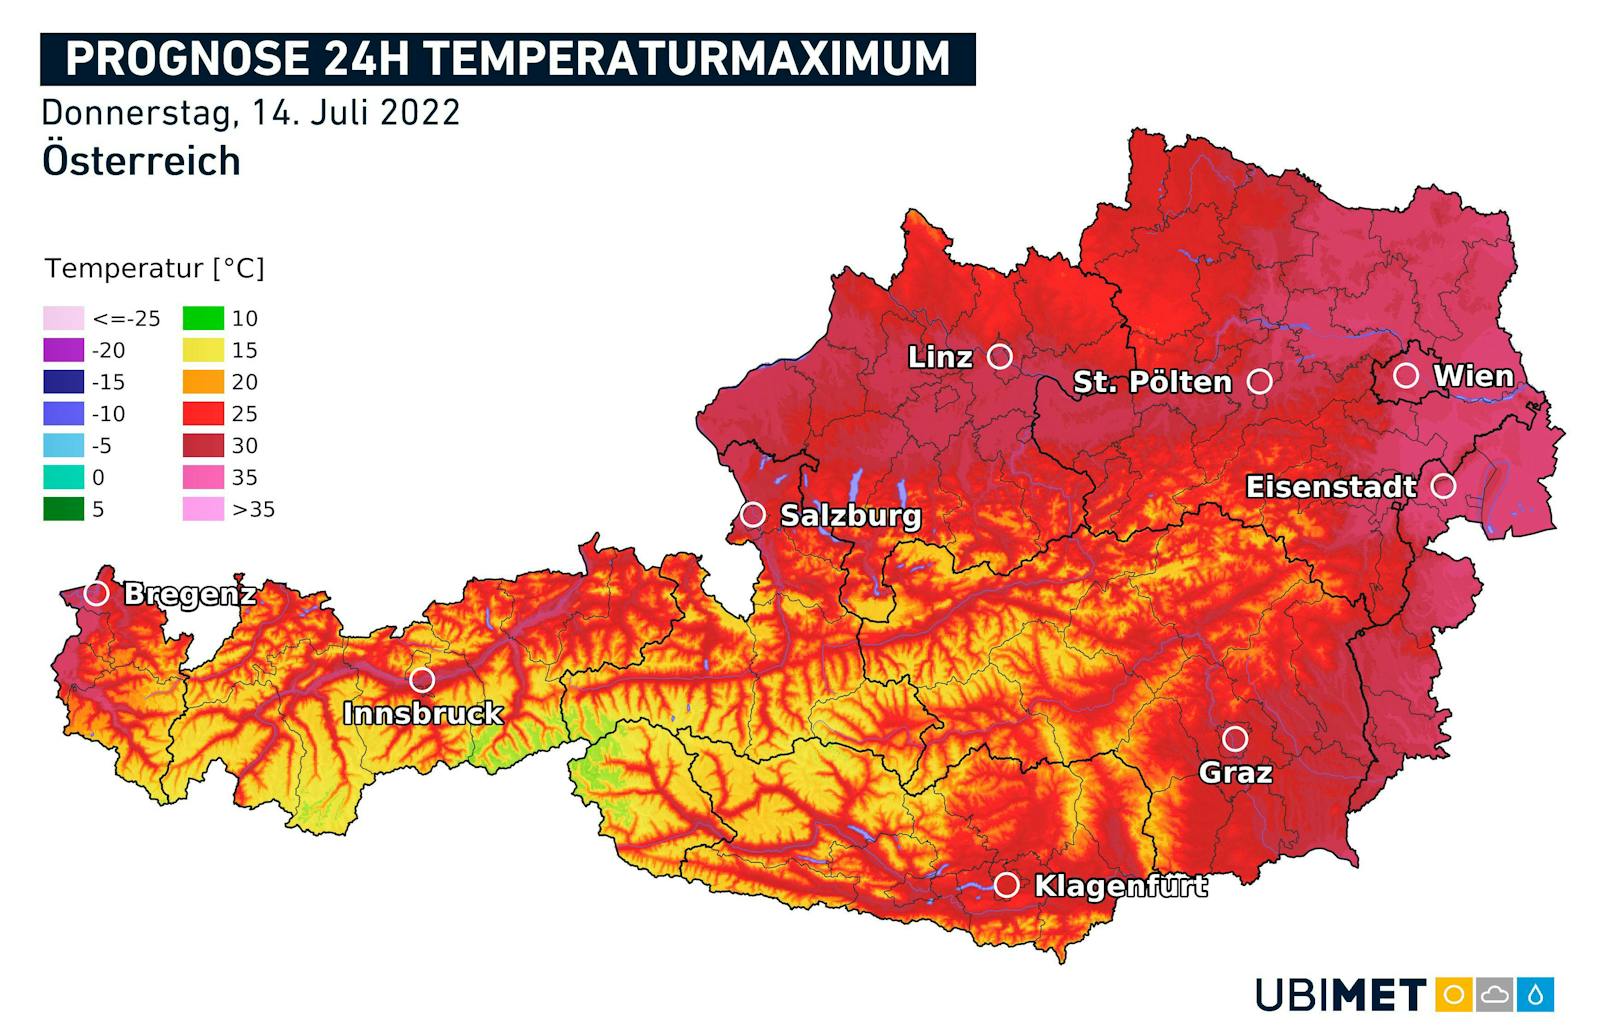 Hitzeprognose für Donnerstag, 14. Juli 2022.